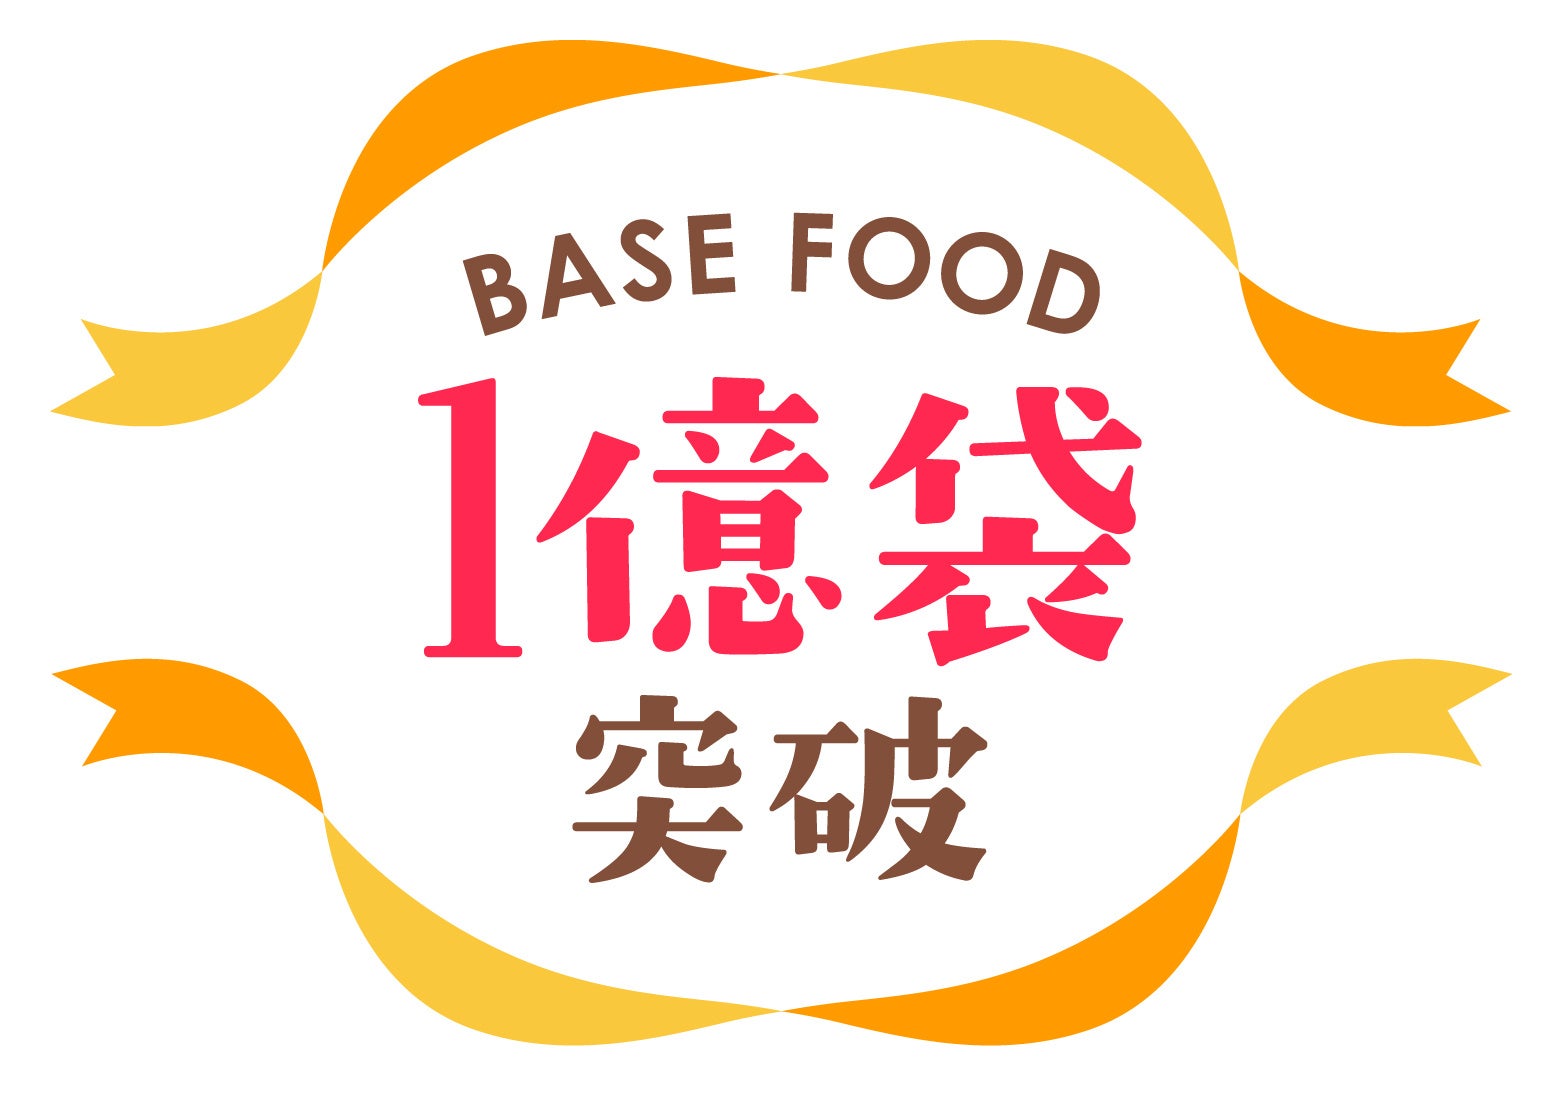 世界初の完全栄養の主食『BASE FOOD』、累計販売数1億袋突破！各種記念キャンペーンを展開